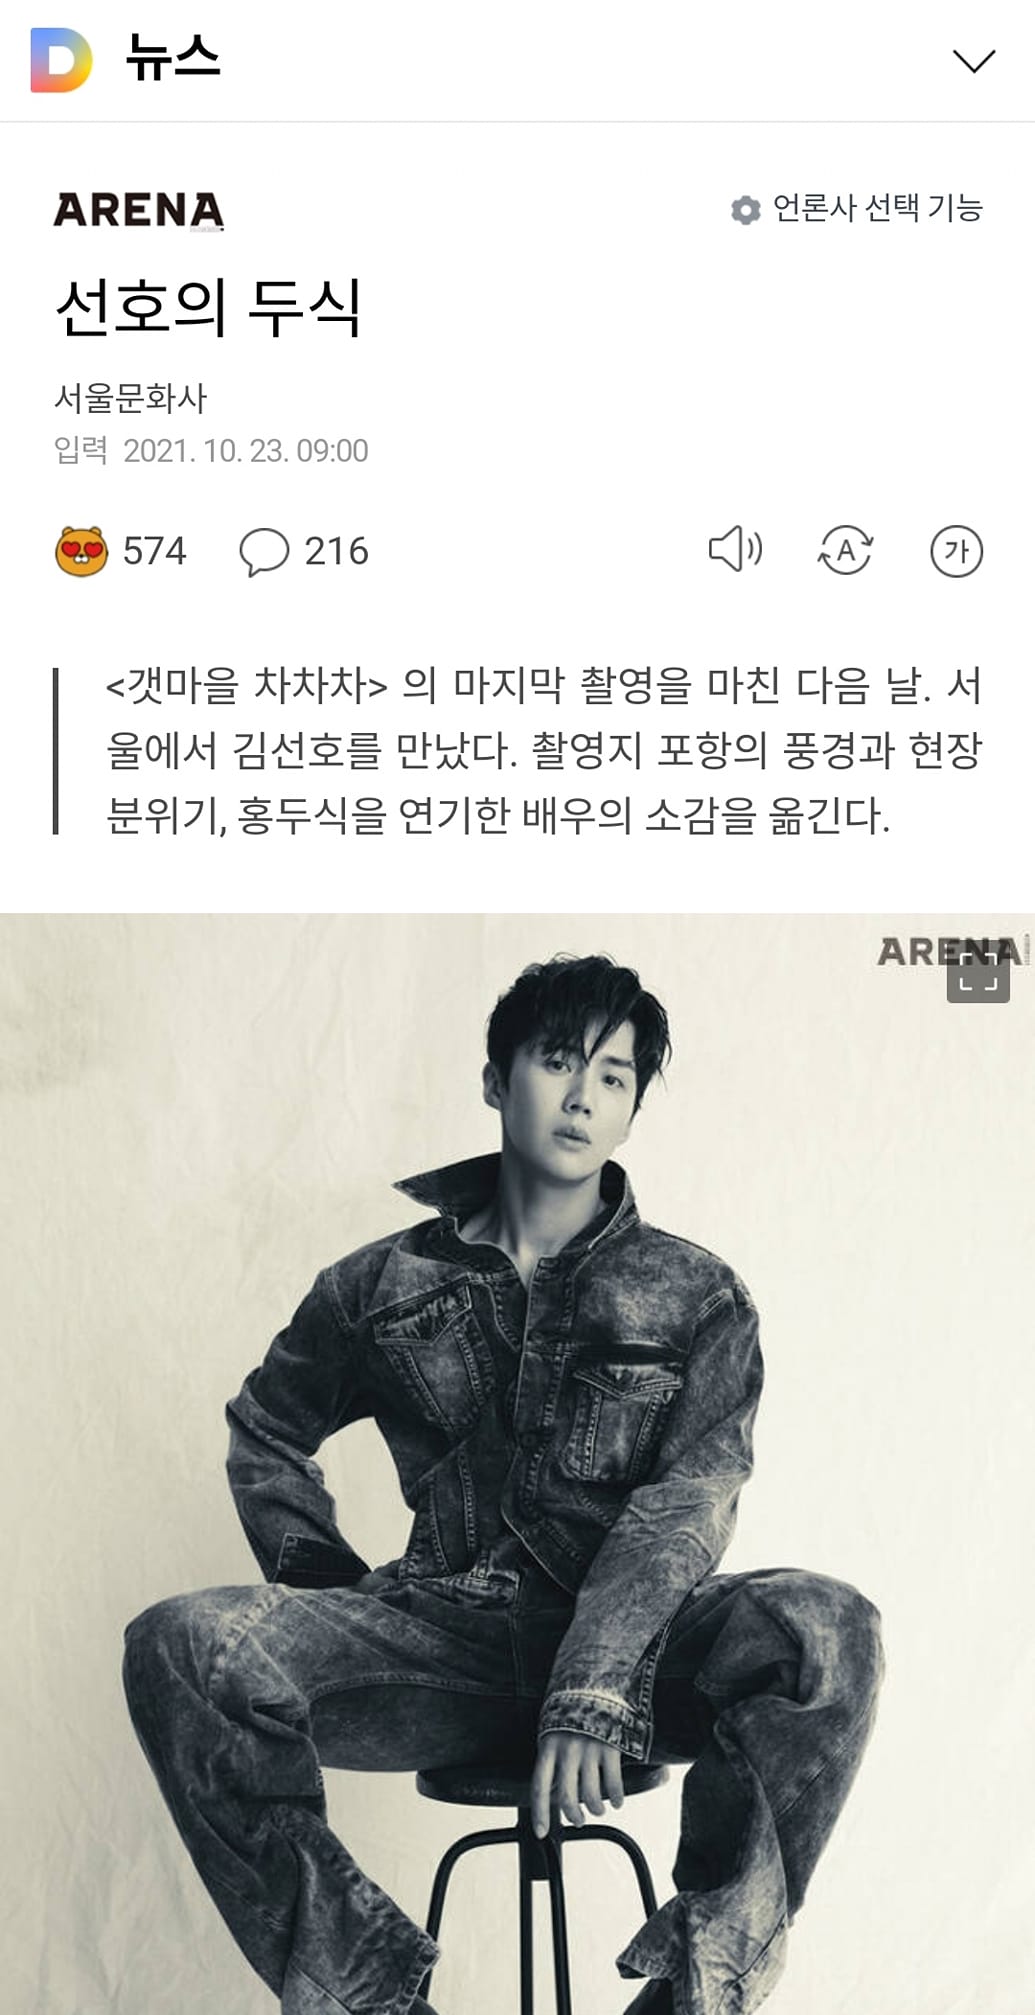 Arena Homme + Korea đăng tải bài phỏng vấn của Kim Seon Ho sau vài ngày Seon Ho lên tiếng thừa nhận cáo buộc.